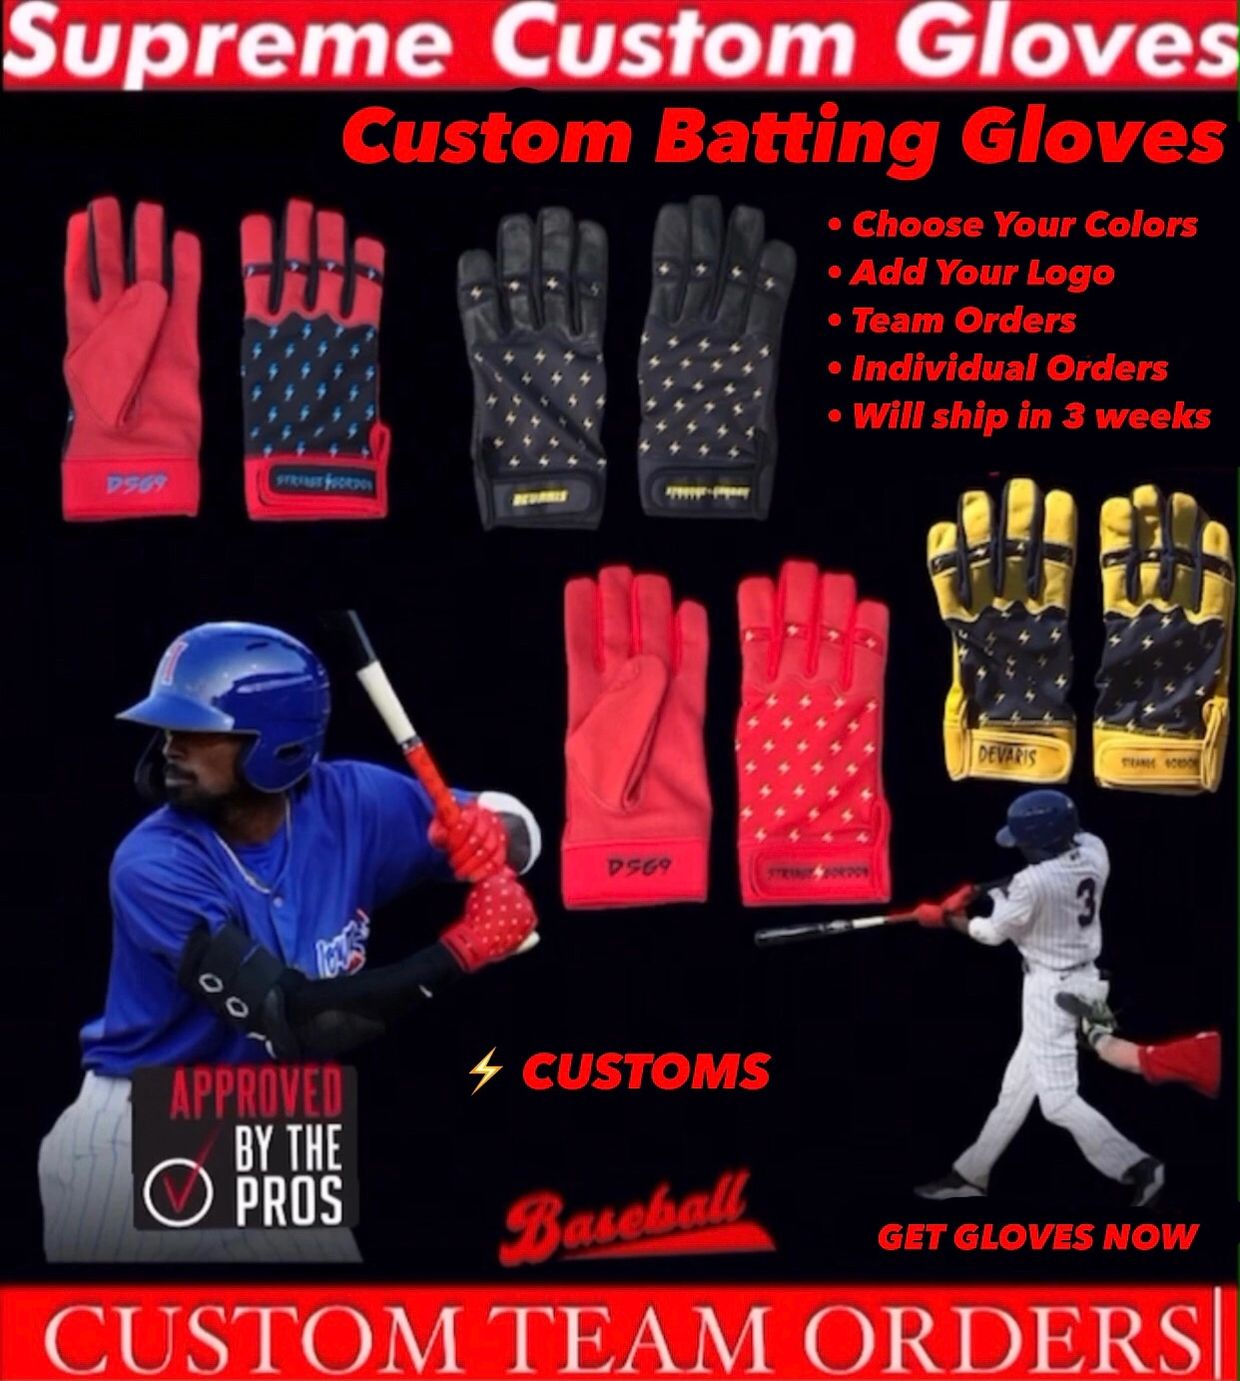 Custom Batting & Football Gloves - Supreme Custom Gloves